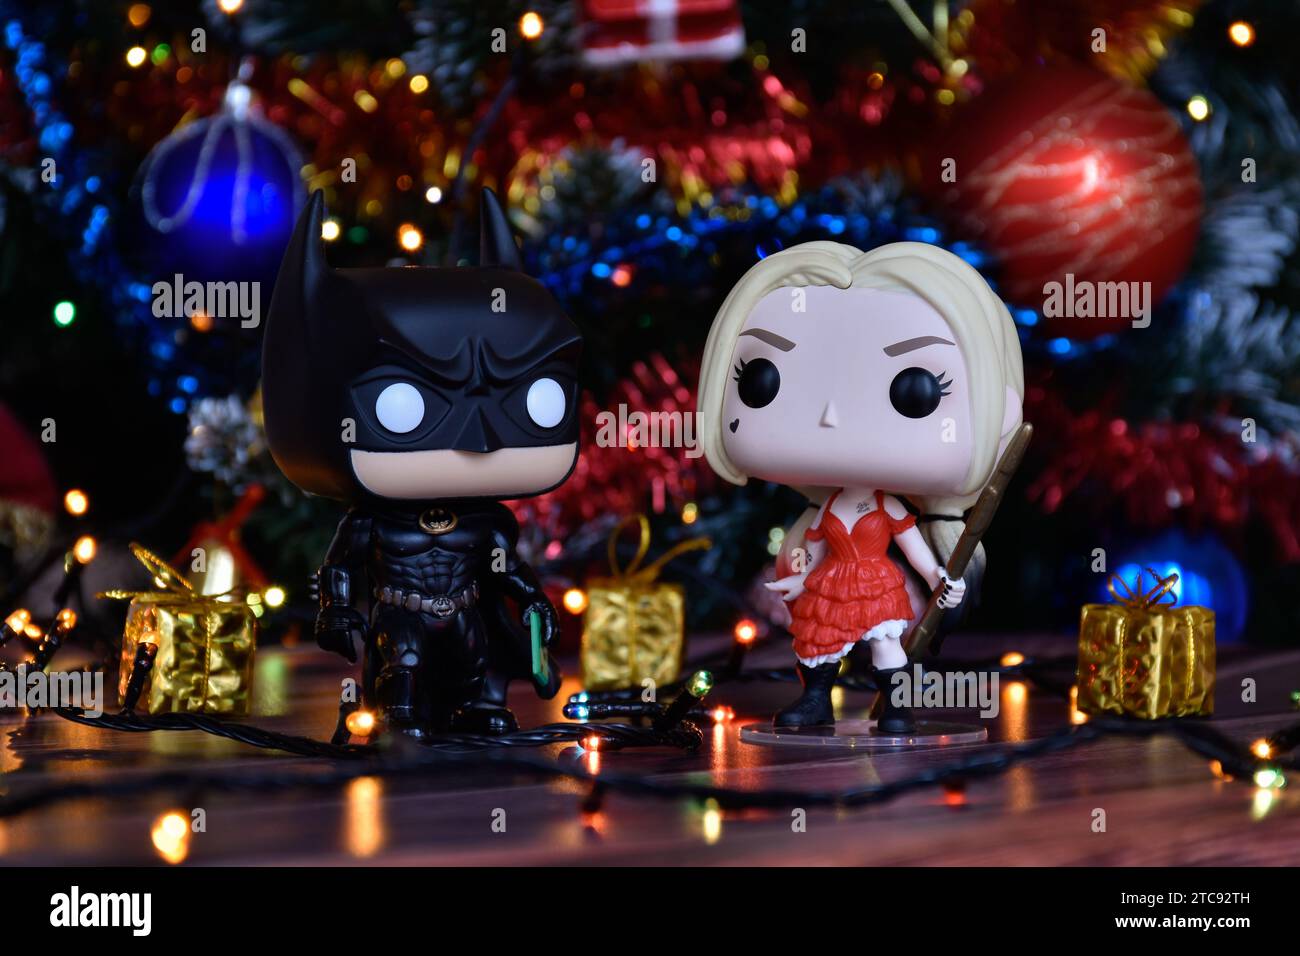 Funko Pop action figure dei supereroi dei fumetti DC Batman e Harley Quinn. Albero di Natale, ornamenti, ghirlanda, confezioni regalo, luci colorate. Foto Stock